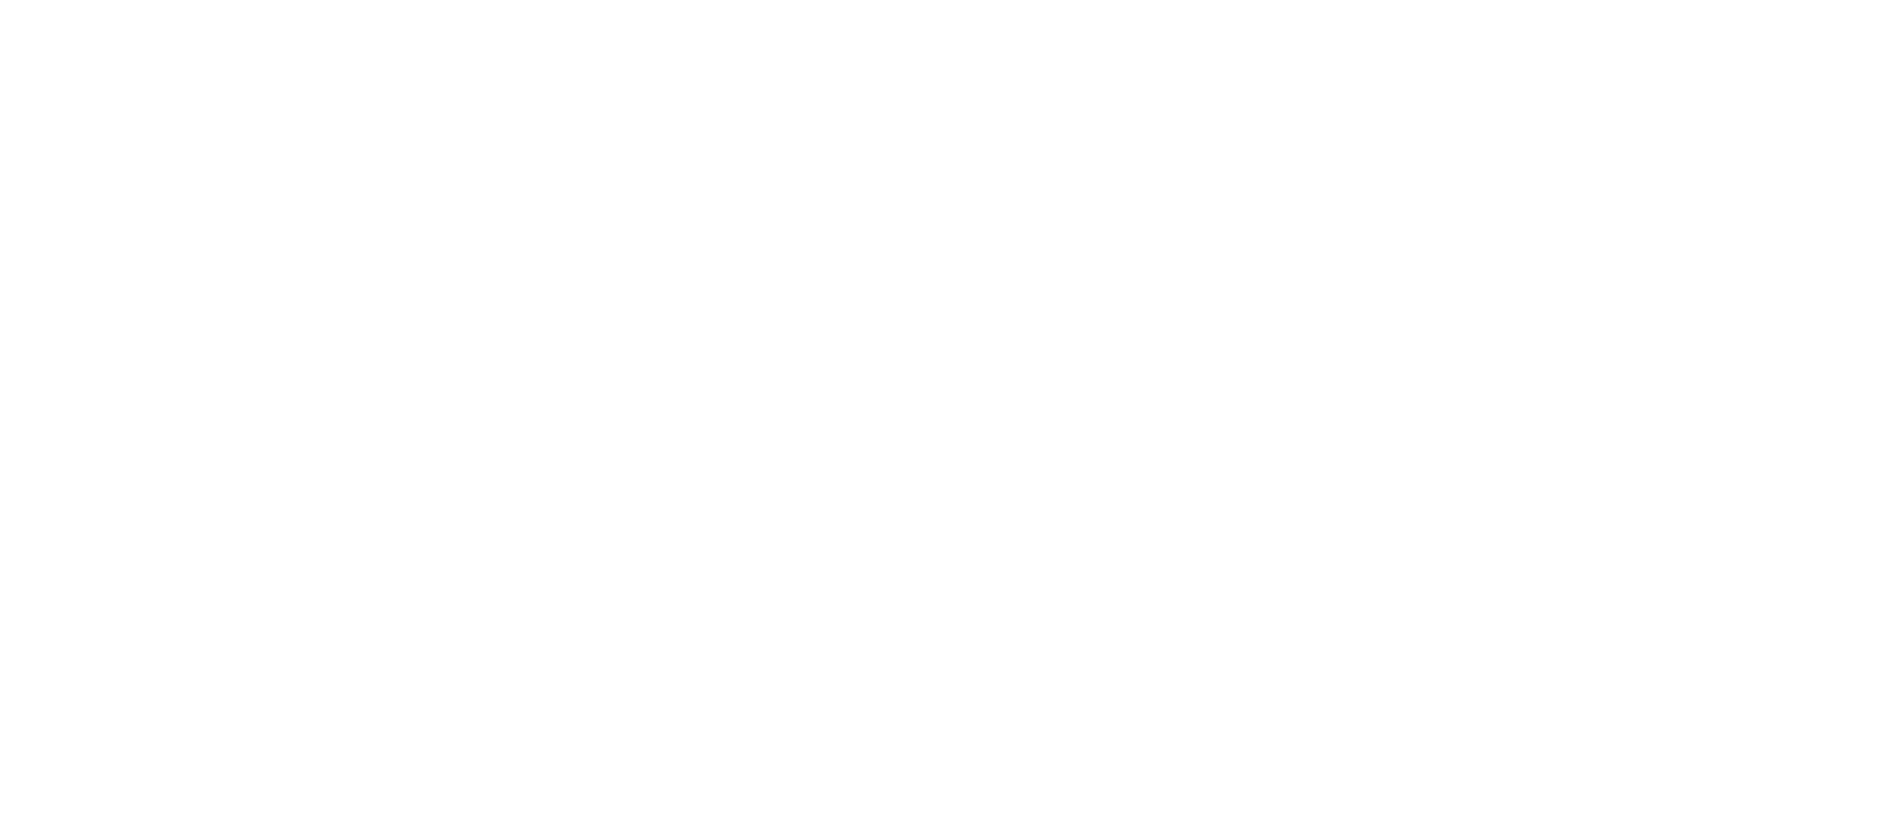 Goat Bike